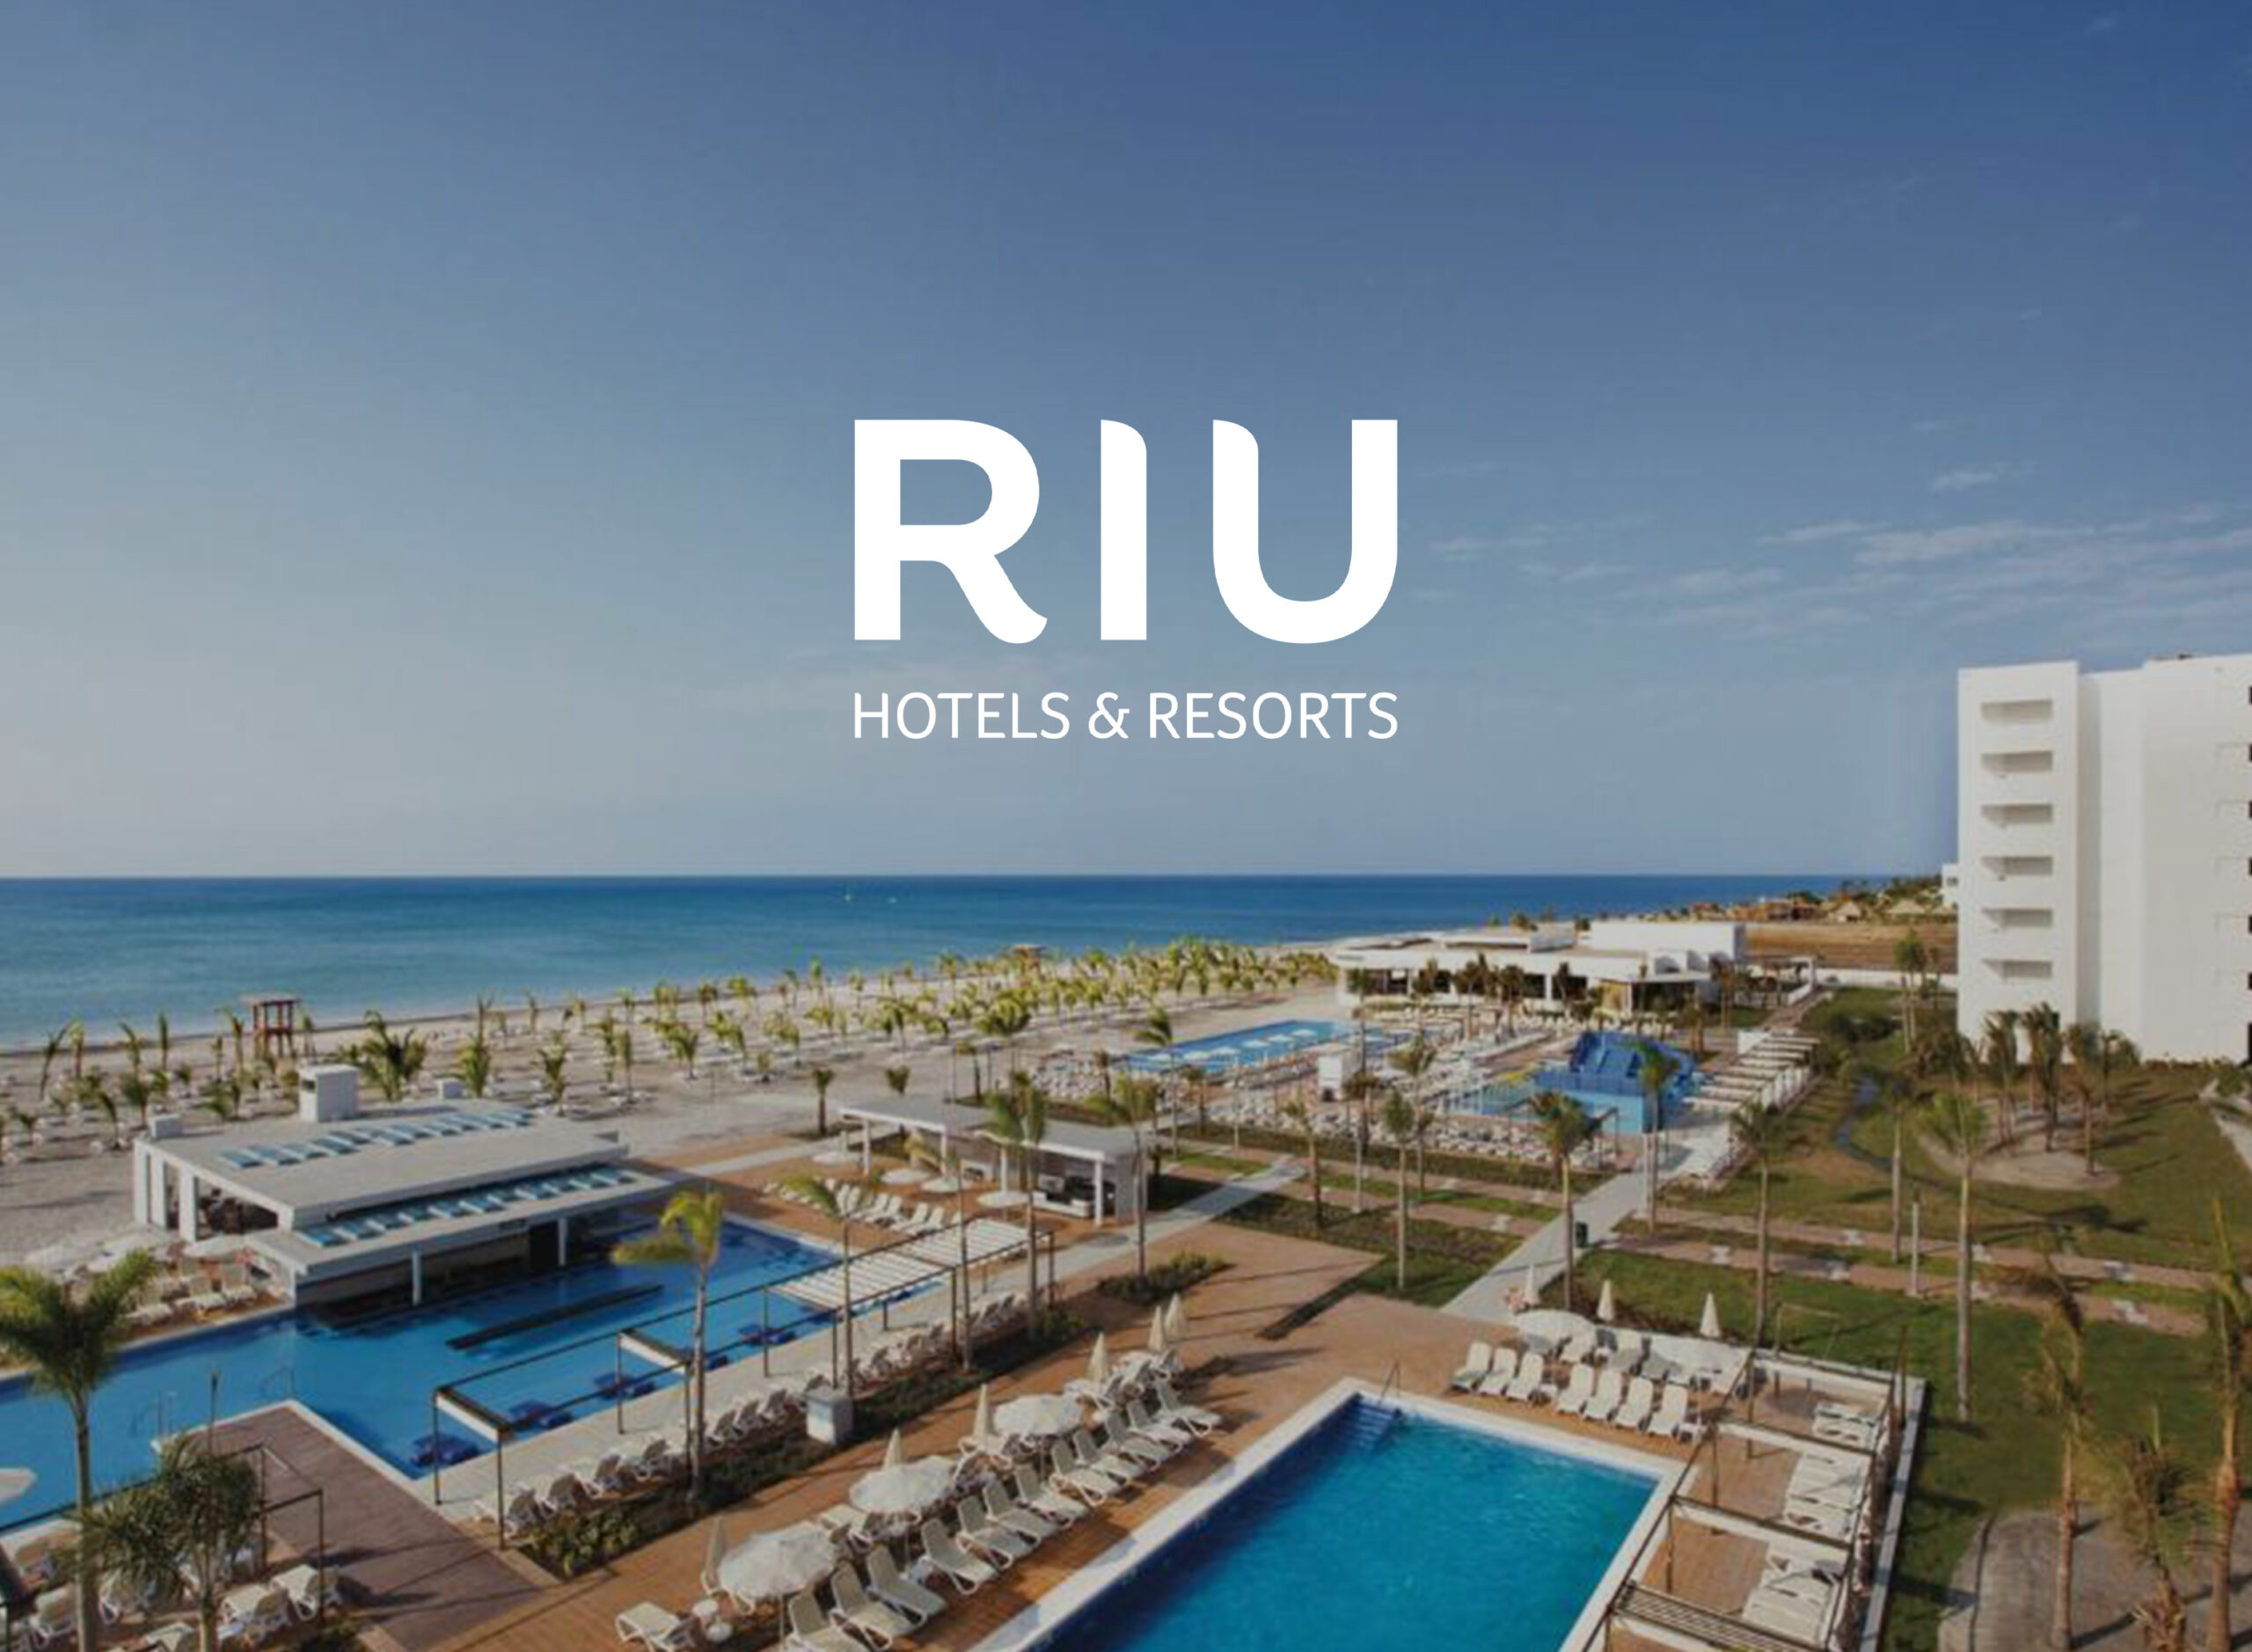 Precio exclusivo para Hotel Riu Plaza y 10% de descuento en el Riu Playa Blanca.